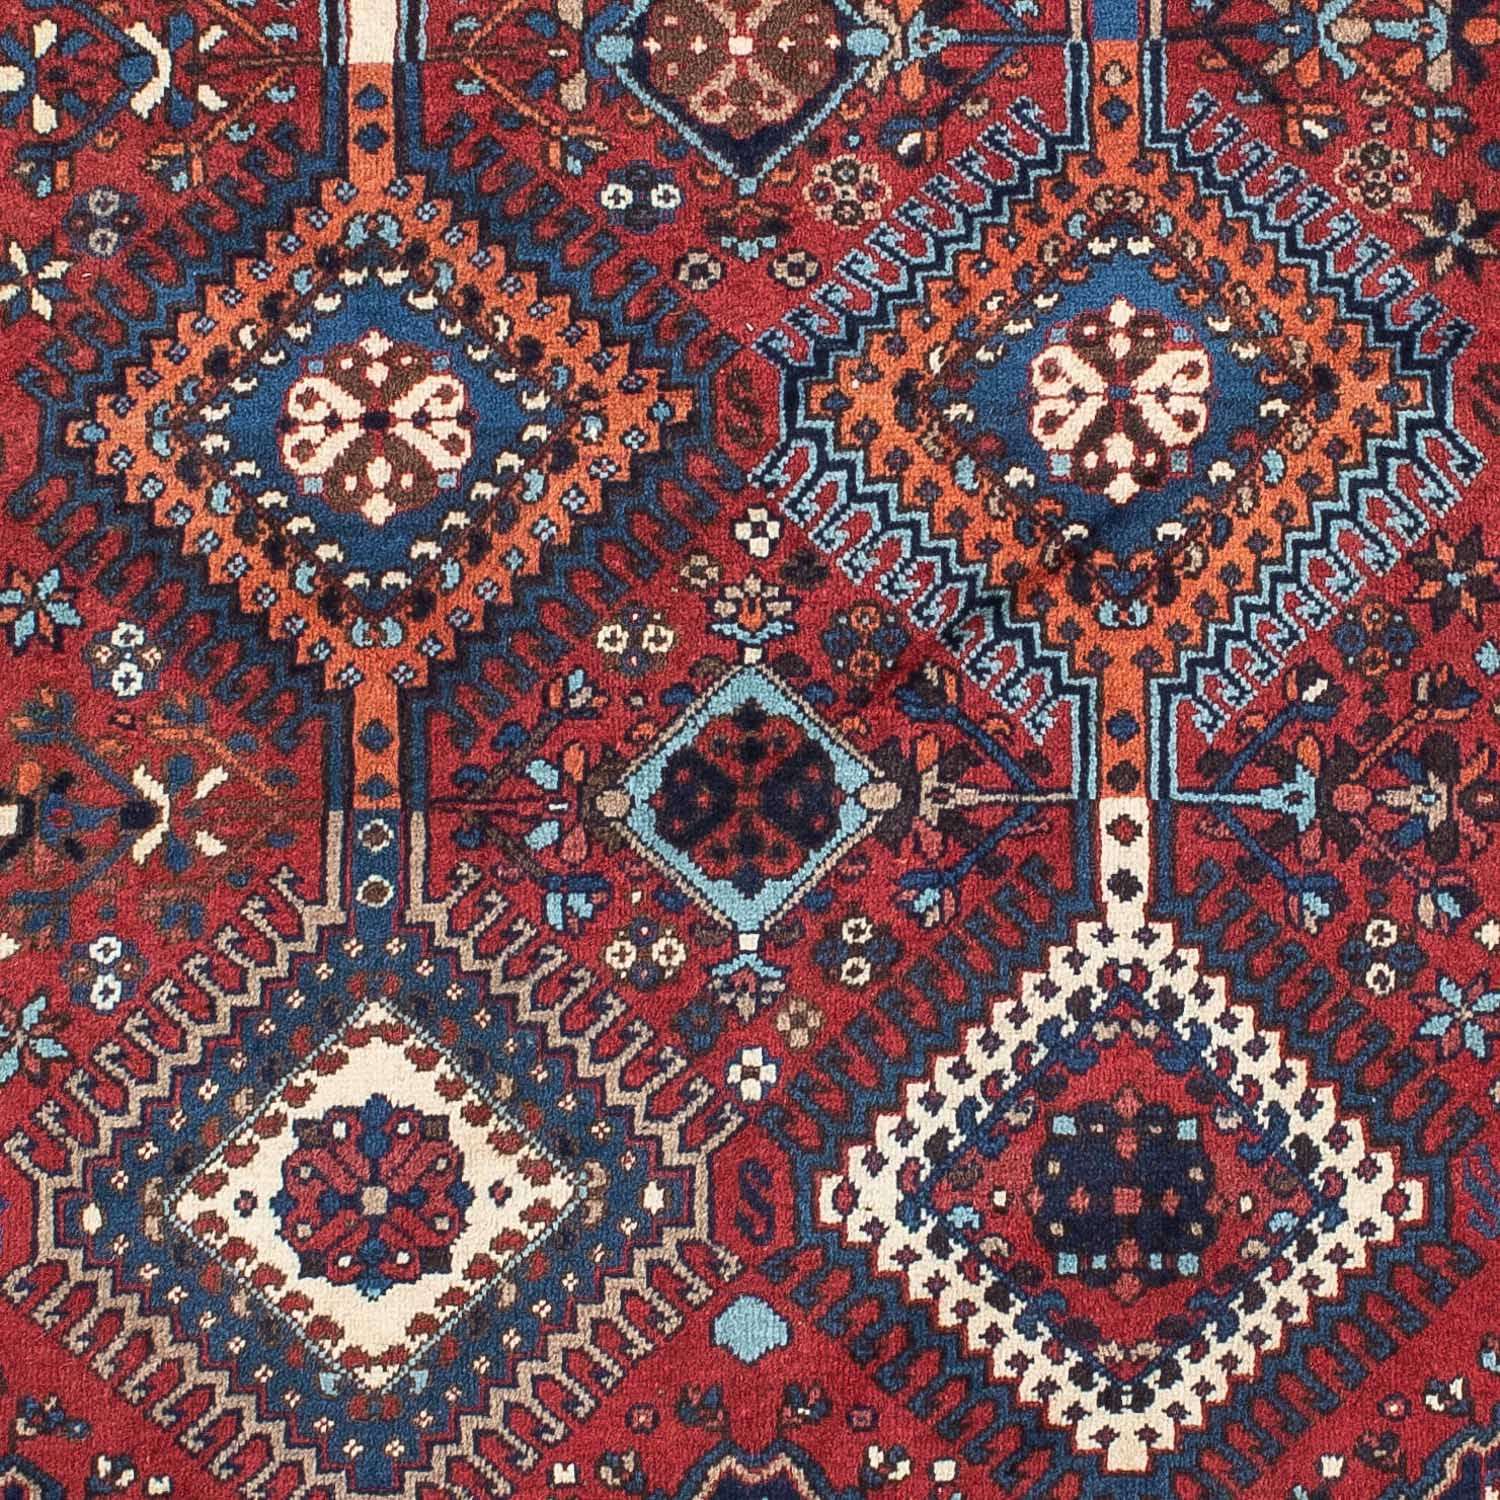 Tapis persan - Nomadic - 147 x 102 cm - rouge